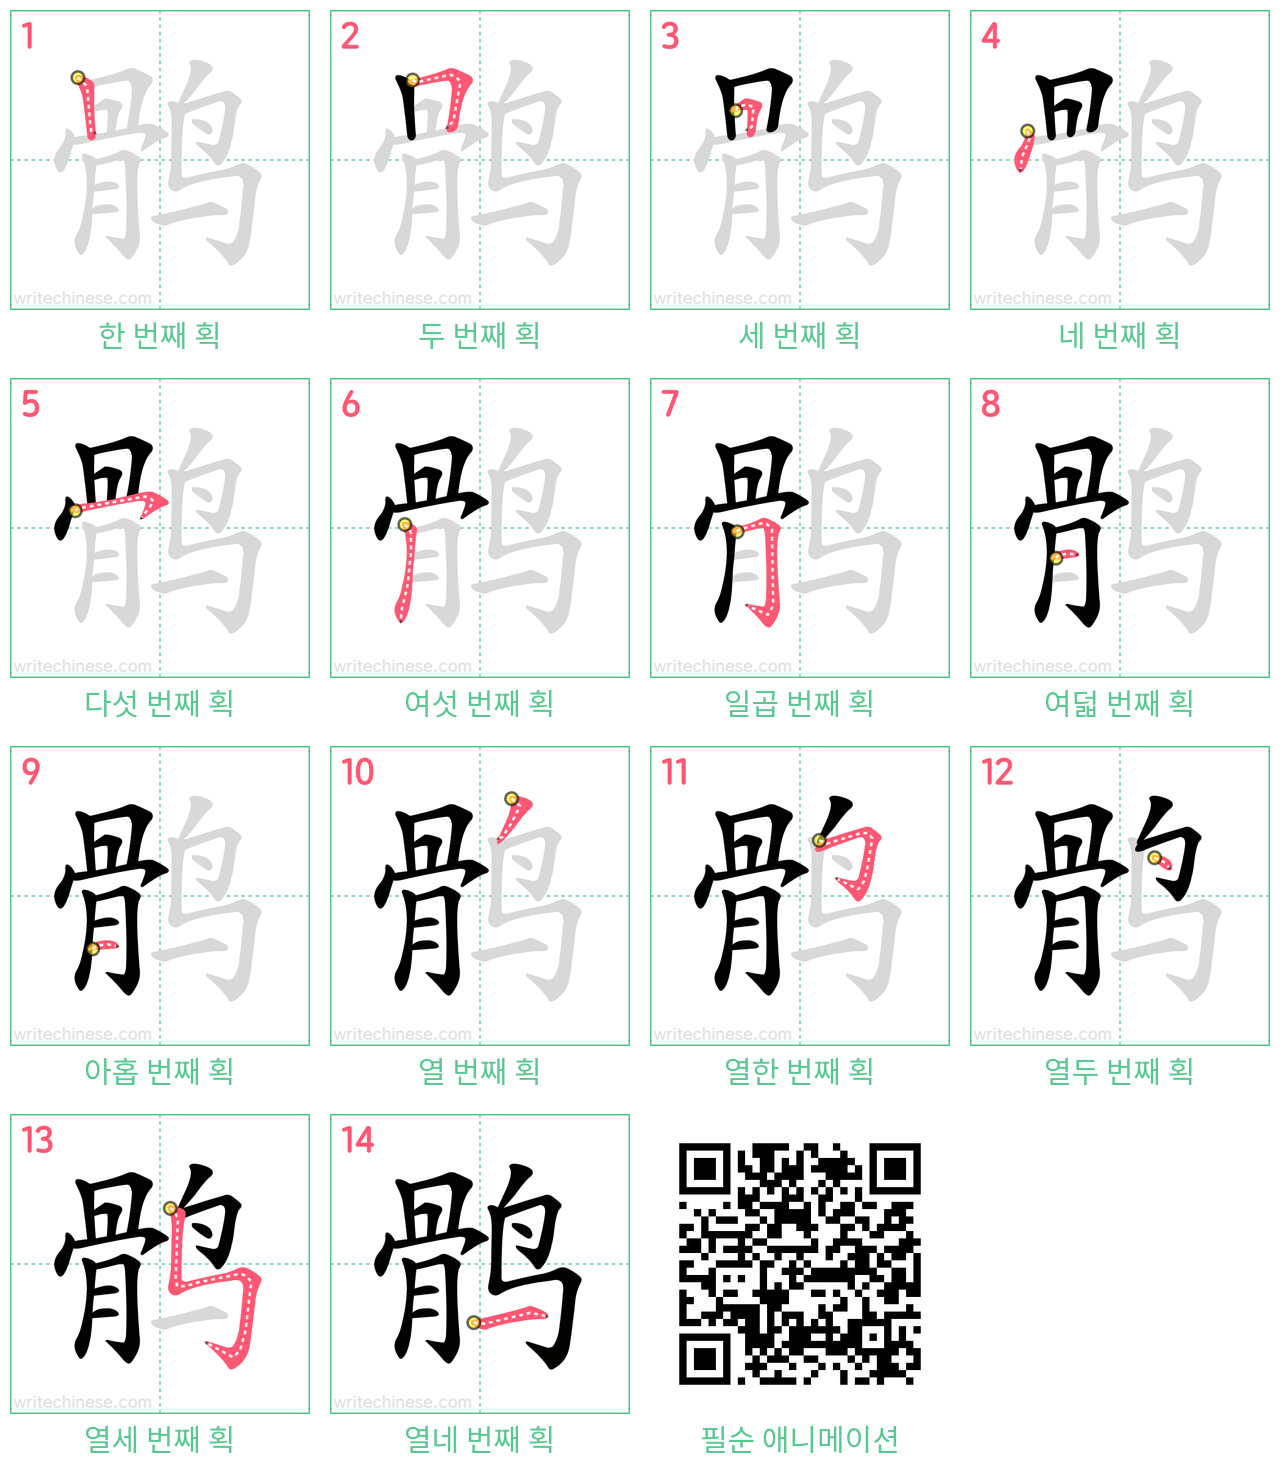 鹘 step-by-step stroke order diagrams